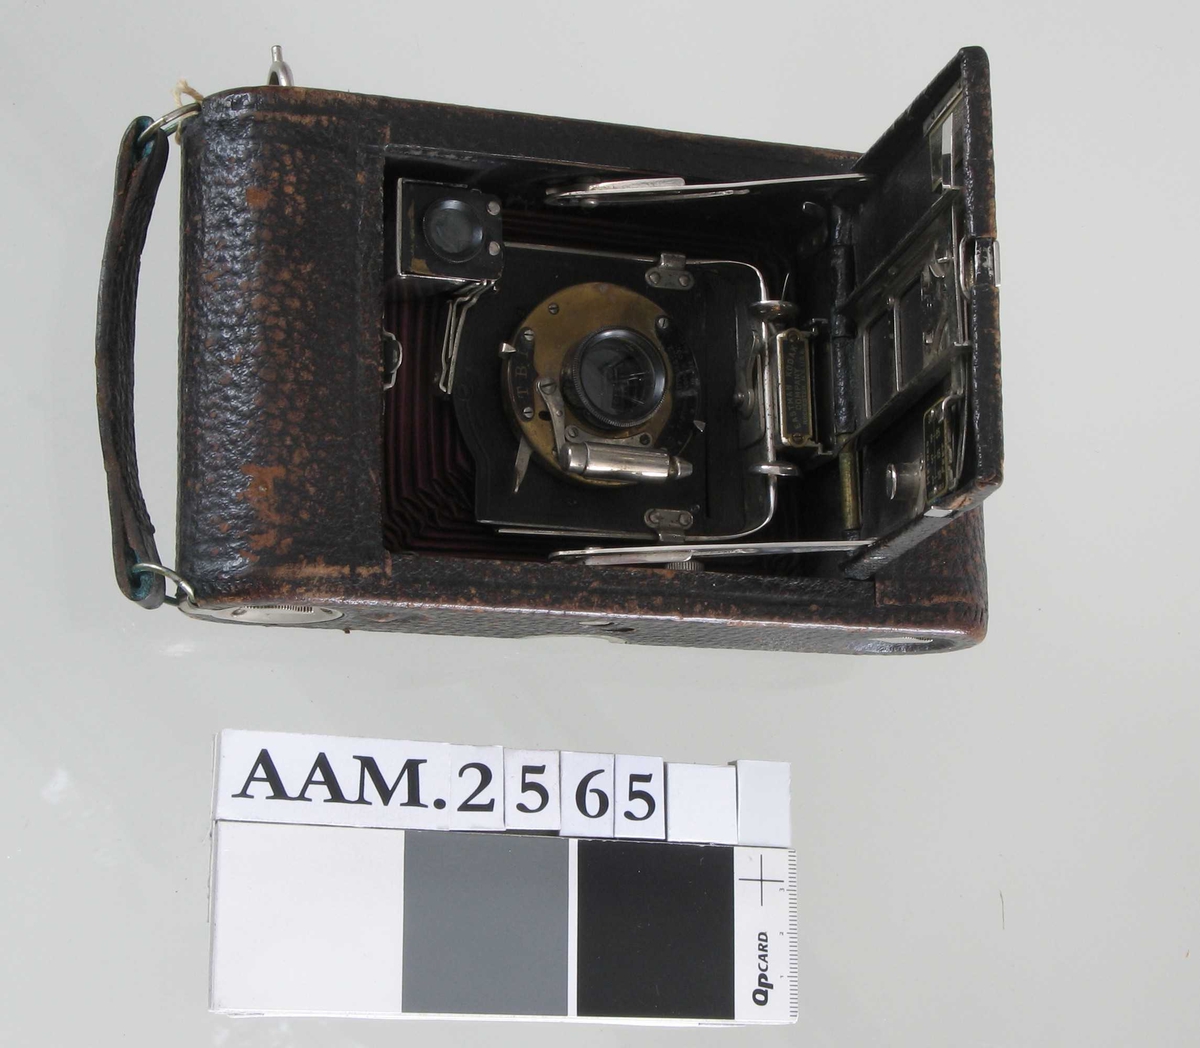 Fotoapparat i etui  "Telma", Zeiss Ikon Datering: 1930-årene a)Apparat, sort  bakelitt,  forkrommete ståldeler/skruer  H. med sikte 8,5 L.13,5 Dybde 4,3  Smal rektangulær hovedform med avfasede hjørner. Foldeapparat, linsen merket  Zeiss Ikon Telma.  Nettar, Anastigmat. 1:6,3 F = 7,5cm. Innvendig etikett:  Zeiss Ikon Film, med filmeske i farger. b) Skinnpose, sort, med glidelås i den ene kortende. L.ca.20 B.Ca. 10,5 
